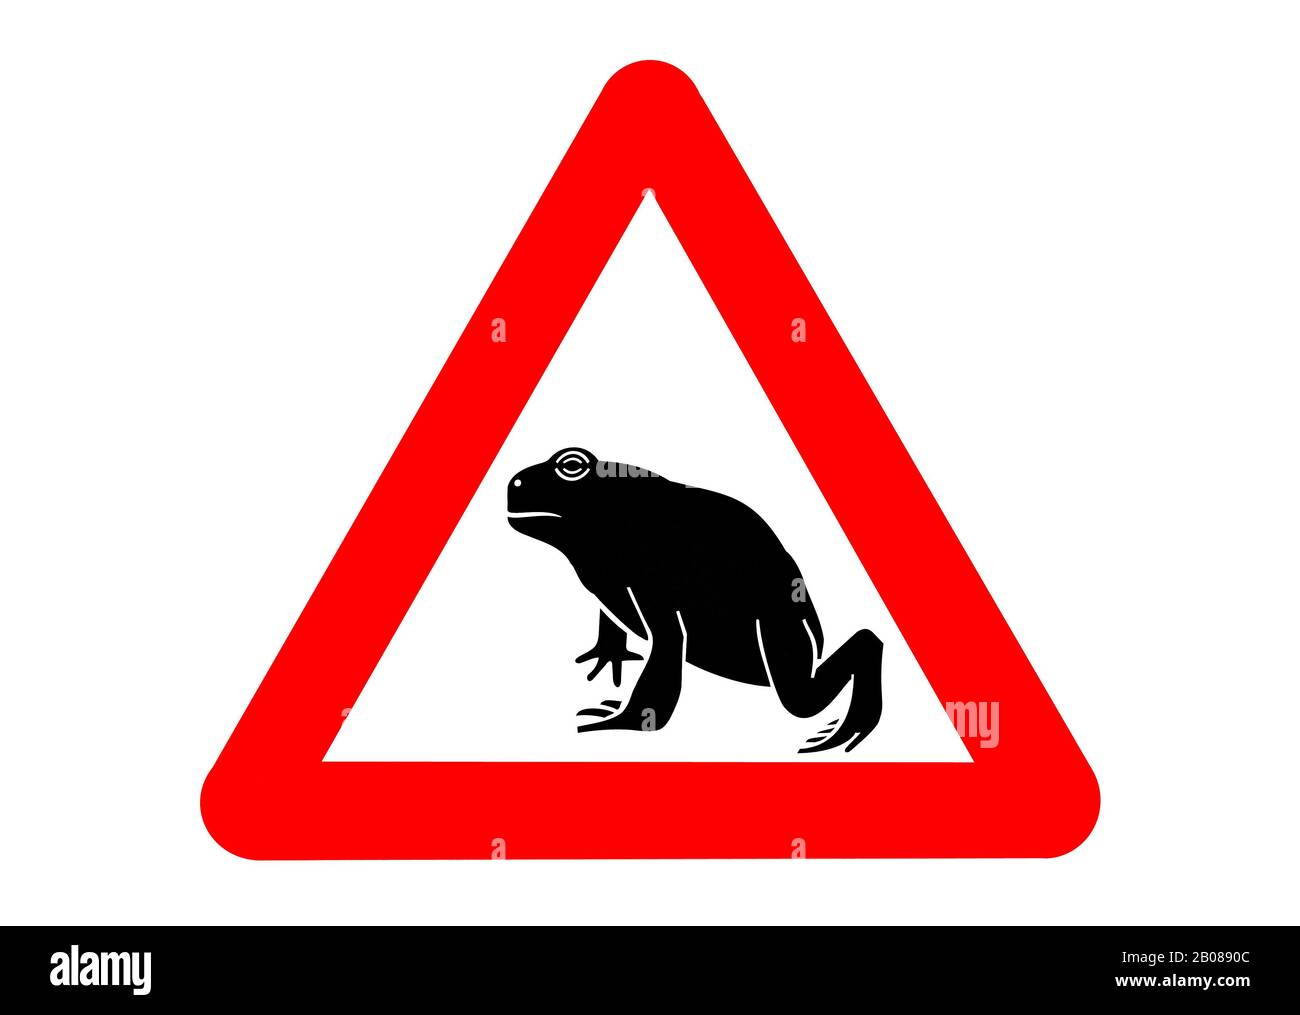 Segnale di avvertimento per la migrazione di anfibi / toads che attraversano la strada durante la migrazione annuale in primavera su sfondo bianco Foto Stock